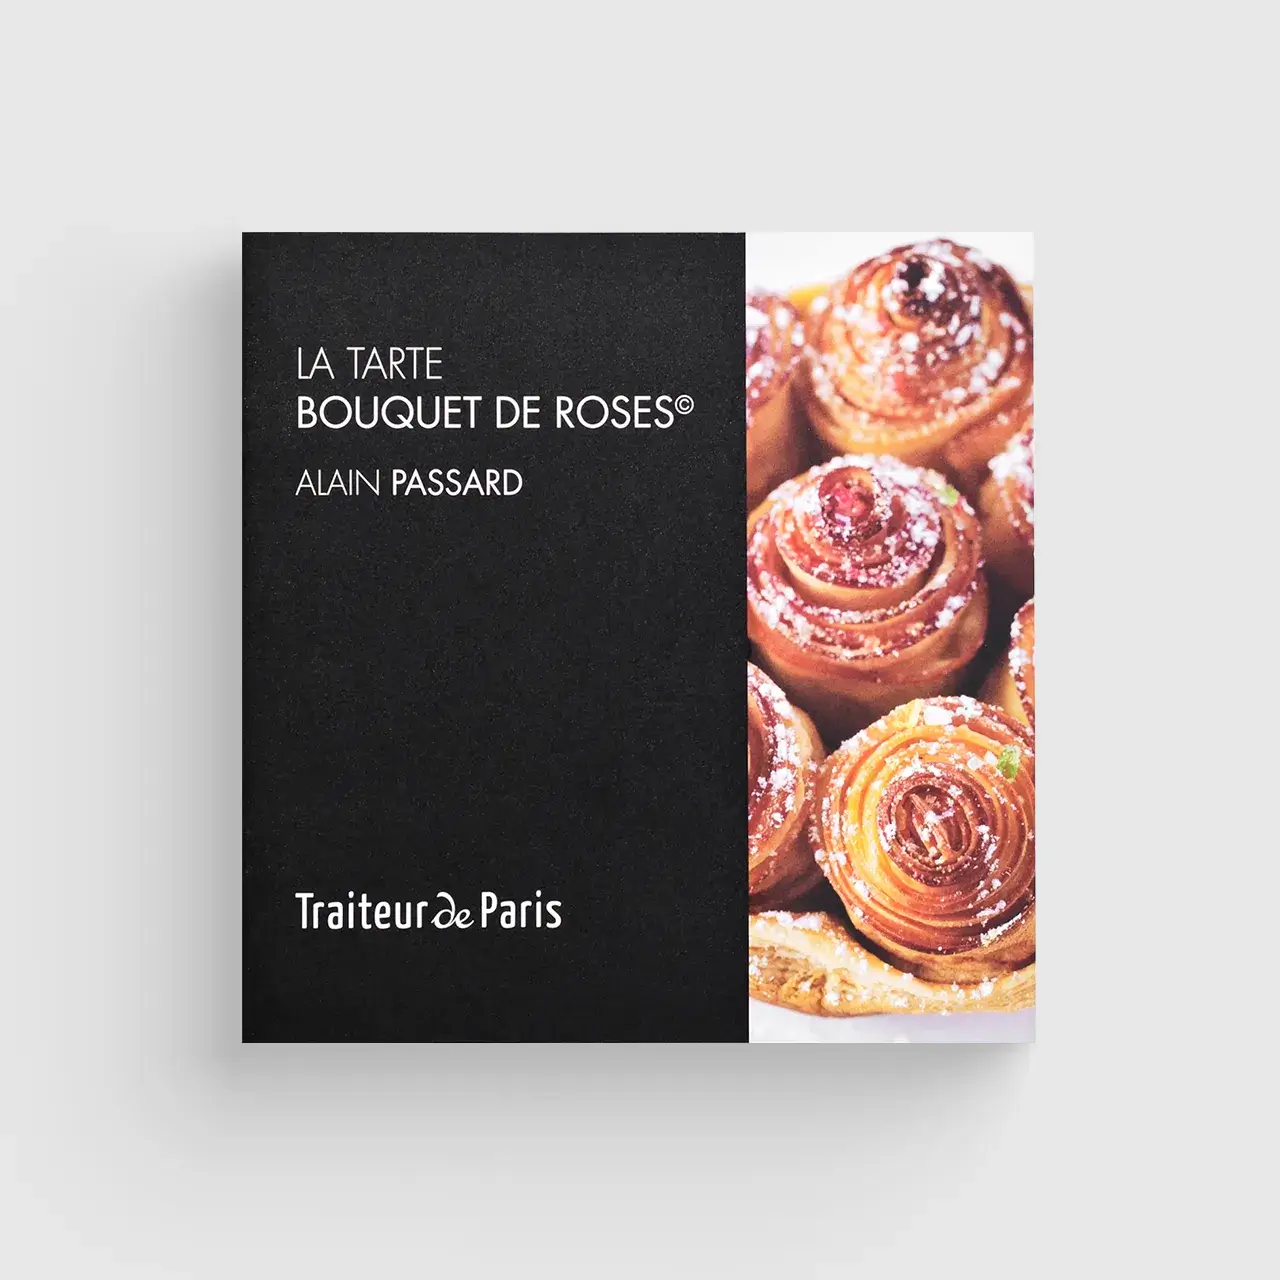 Catalogue La Tarte Bouquet de Roses Alain Passard & Traiteur de Paris, fabricant des pâtisseries et des produits traiteur surgelés de haute qualité